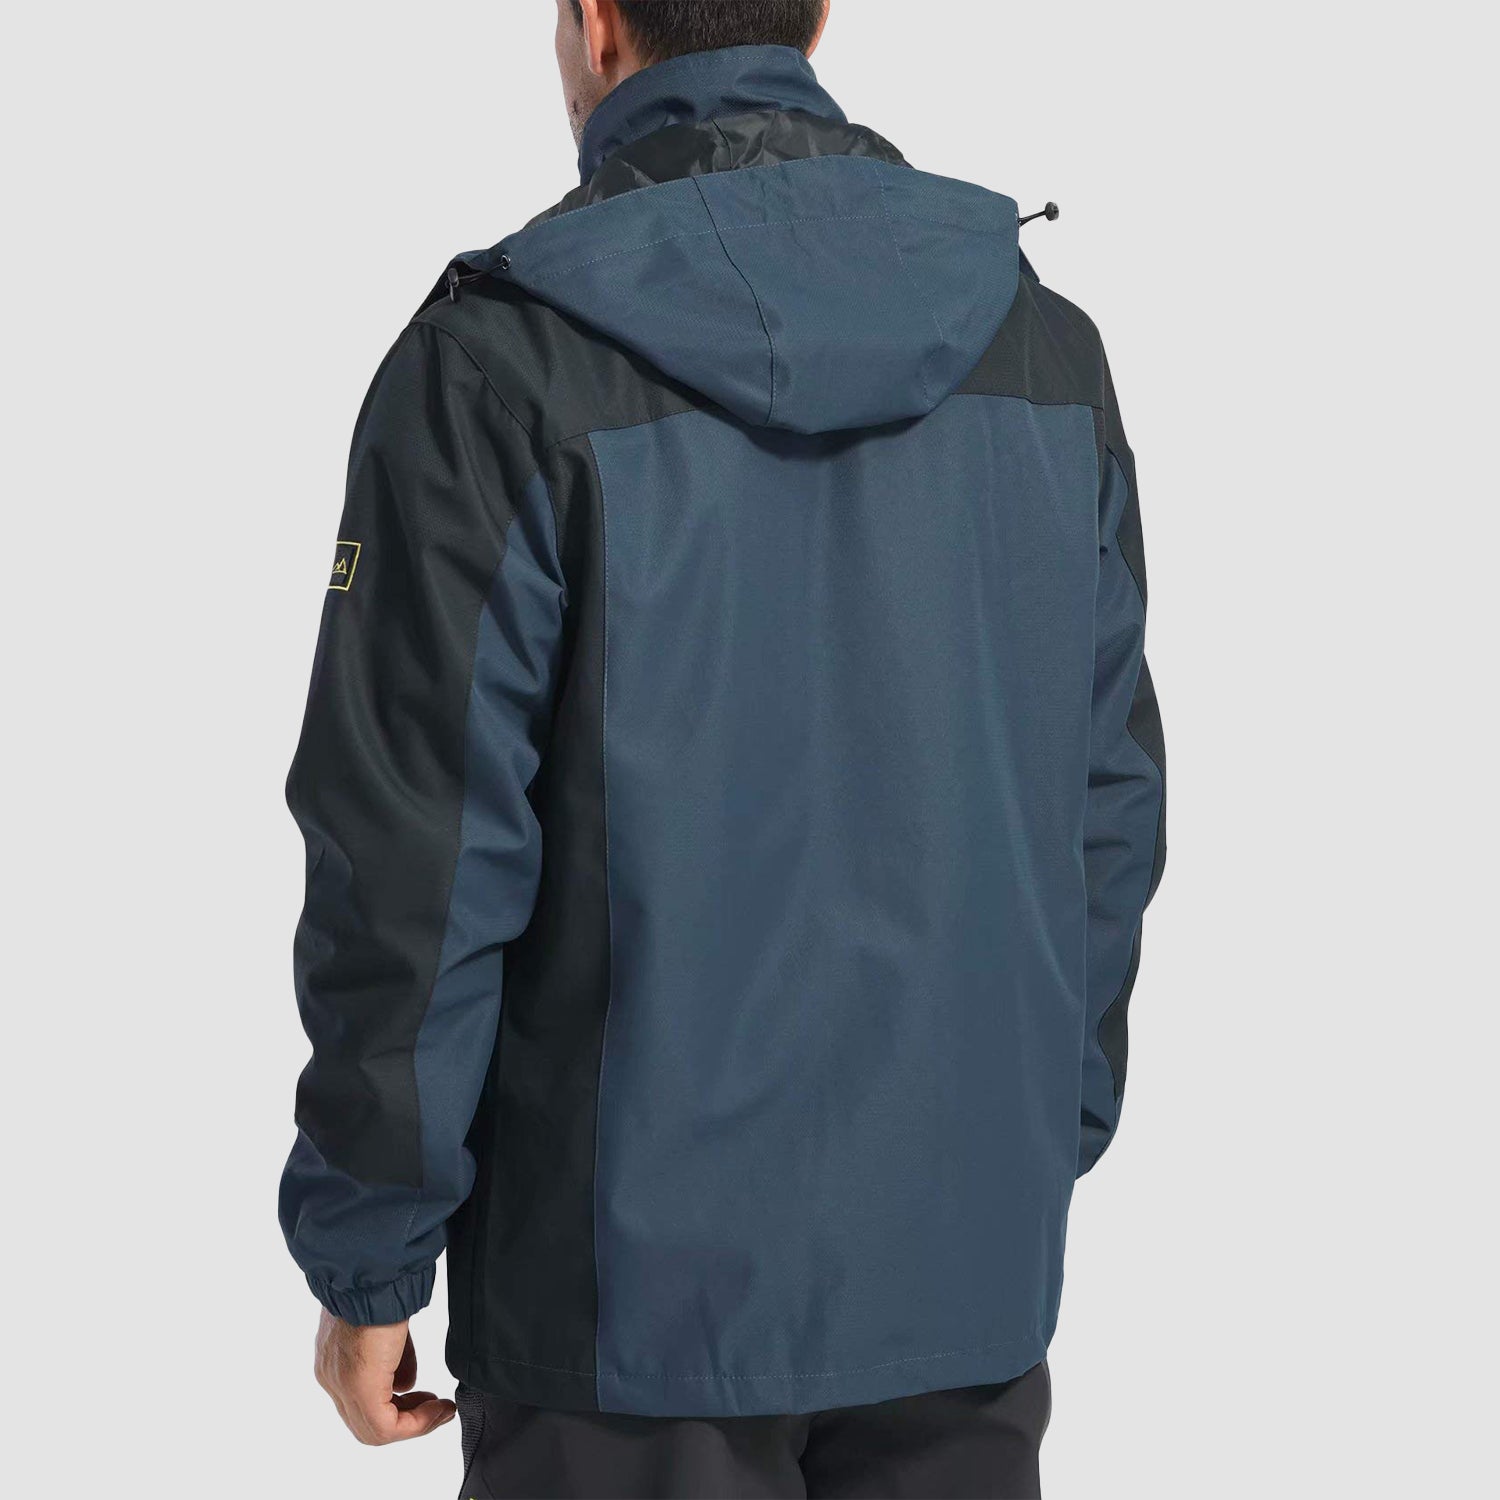 Men's Hooded Jacket Waterproof Windbreaker Coat for Outdoors – MAGCOMSEN